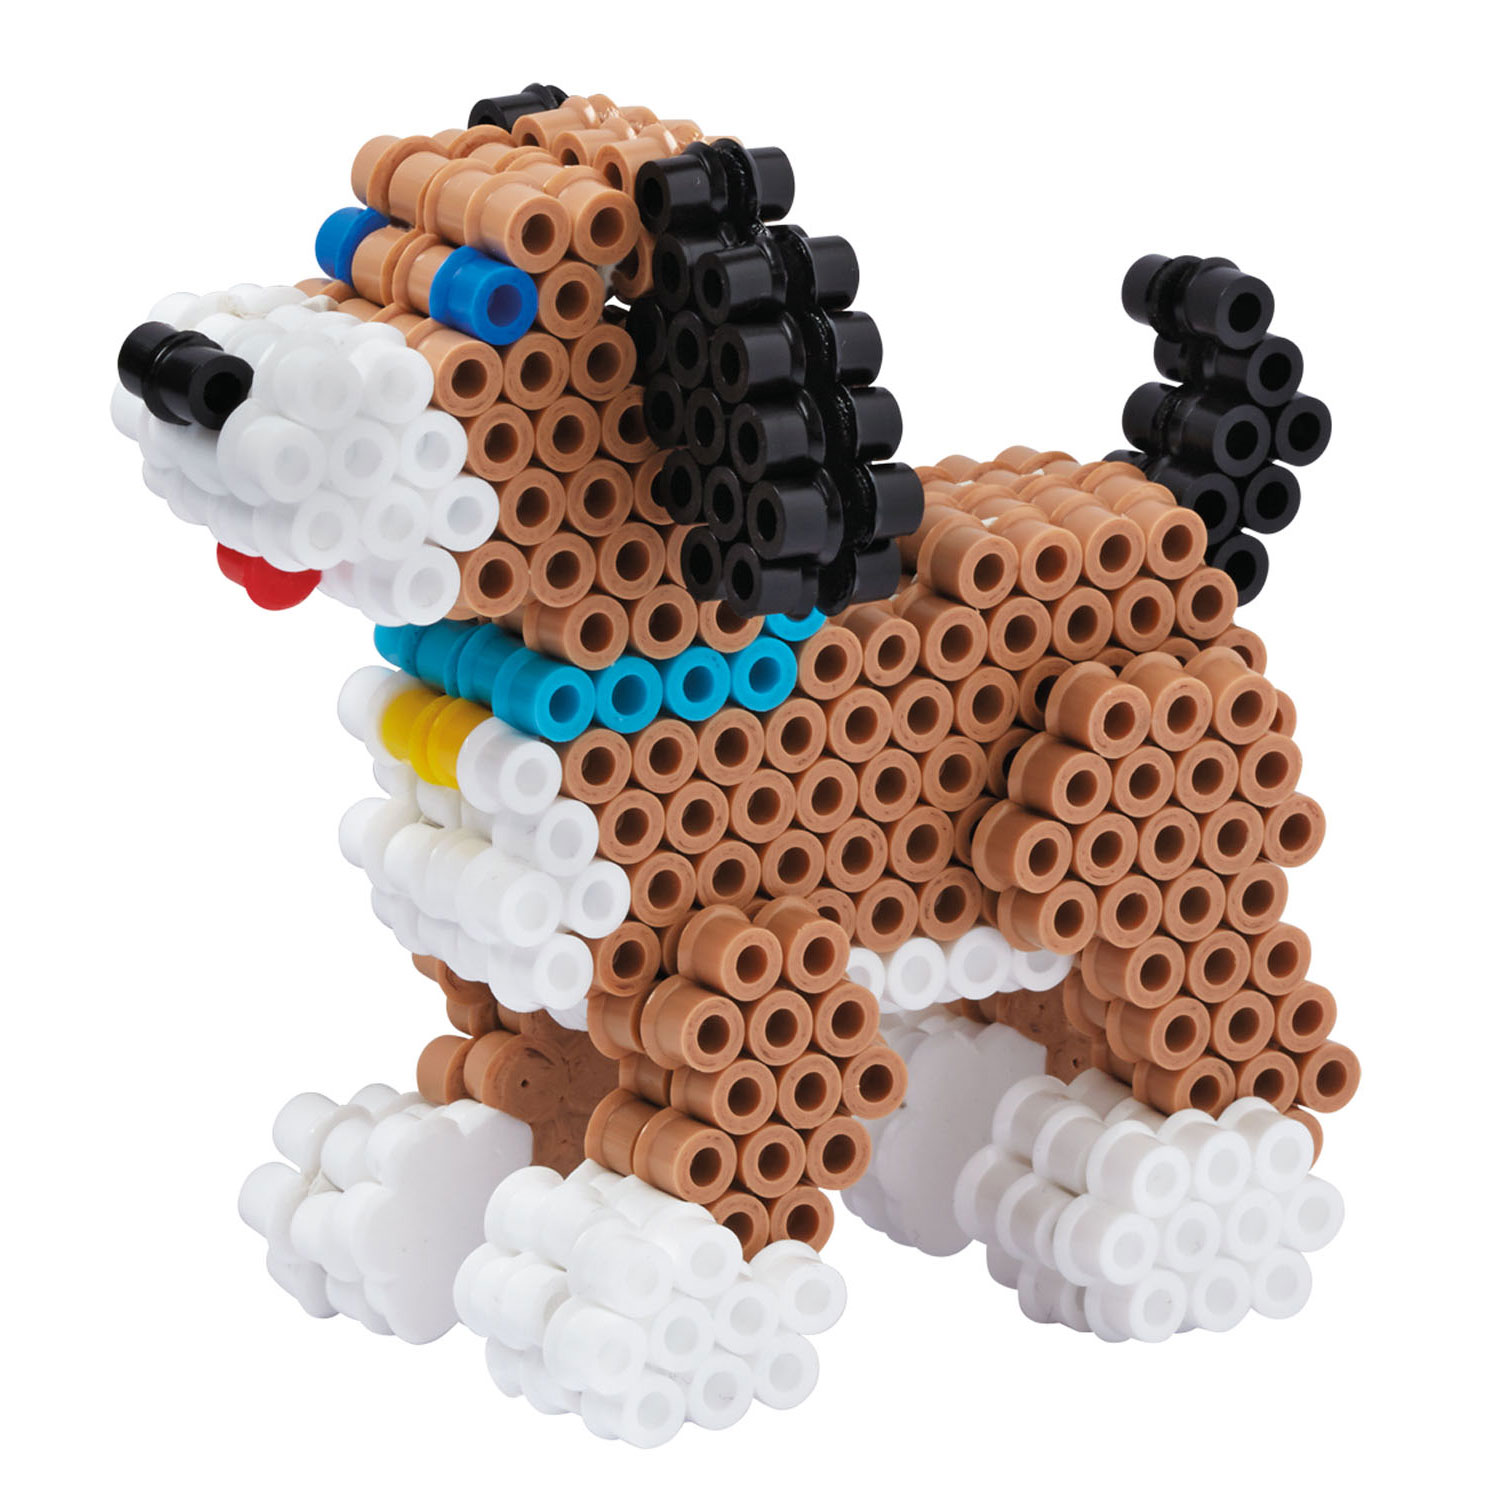 Hama Strijkkralenset 3D - Honden, 2500st.